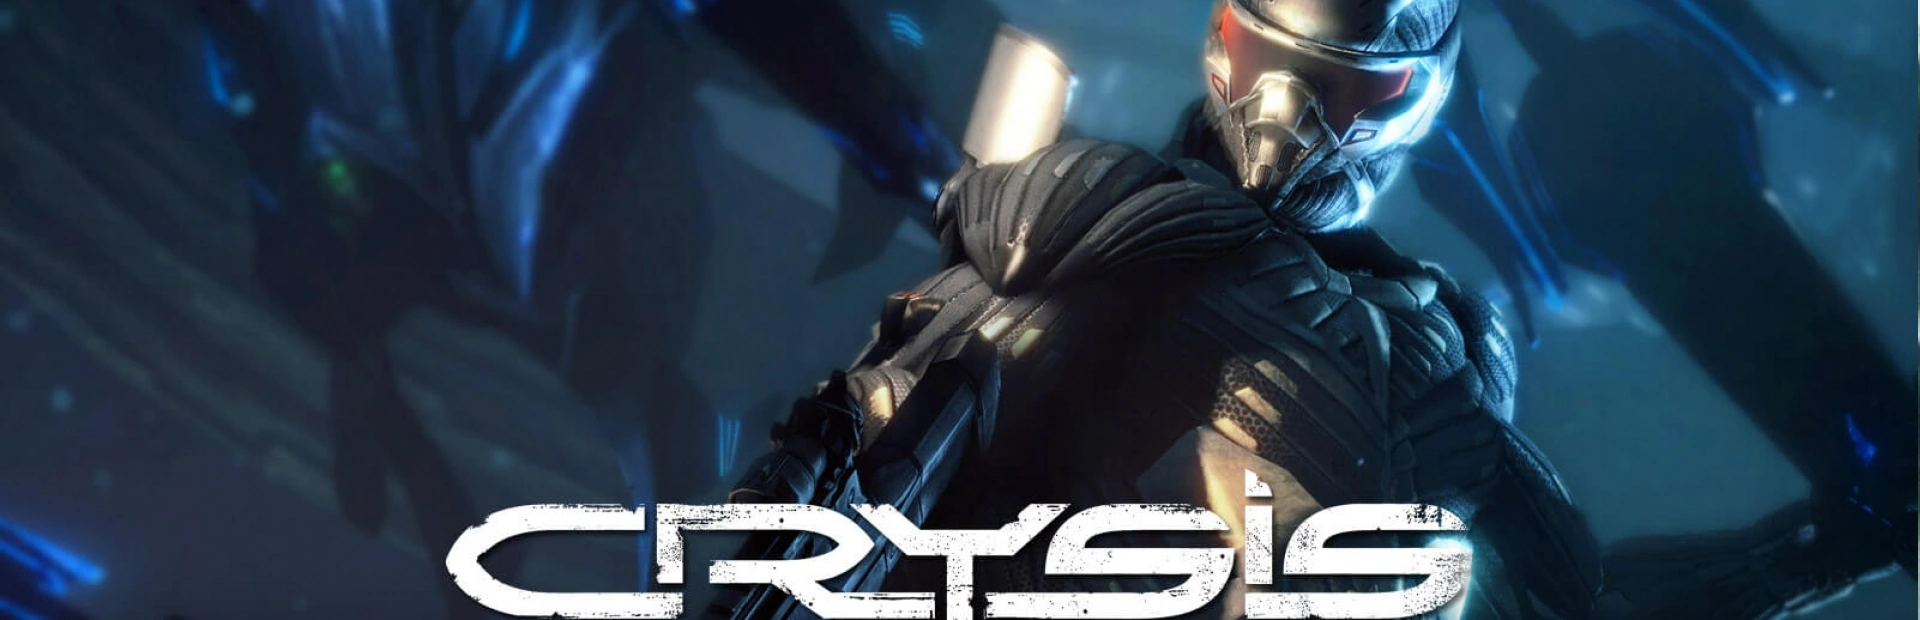 دانلود بازی Crysis Remastered برای کامپیوتر